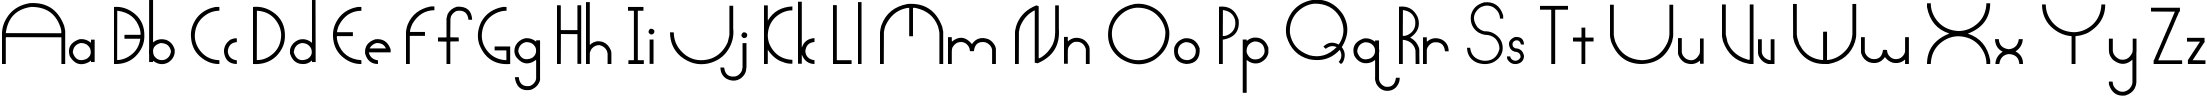 Пример написания английского алфавита шрифтом Arctic